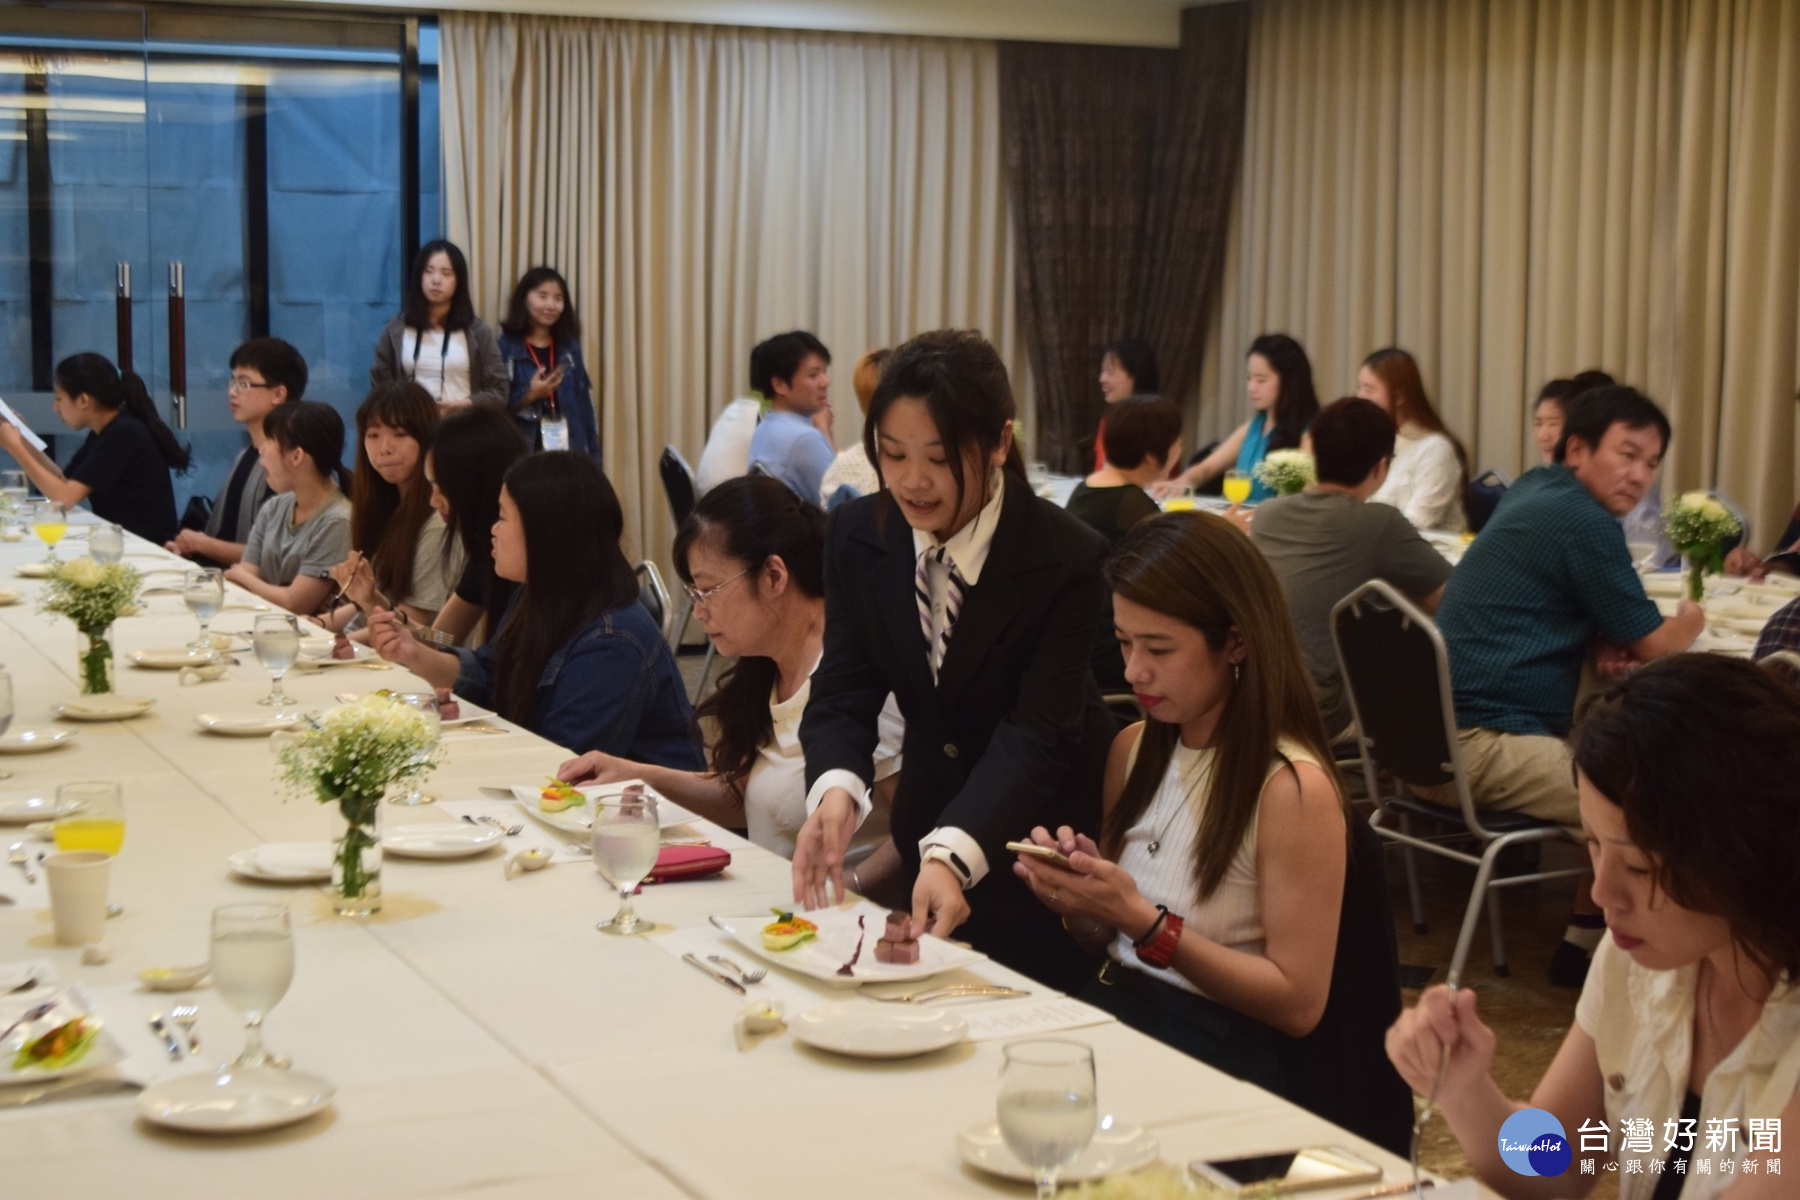 崑山科大餐飲系學生為嘉賓進行桌邊服務。